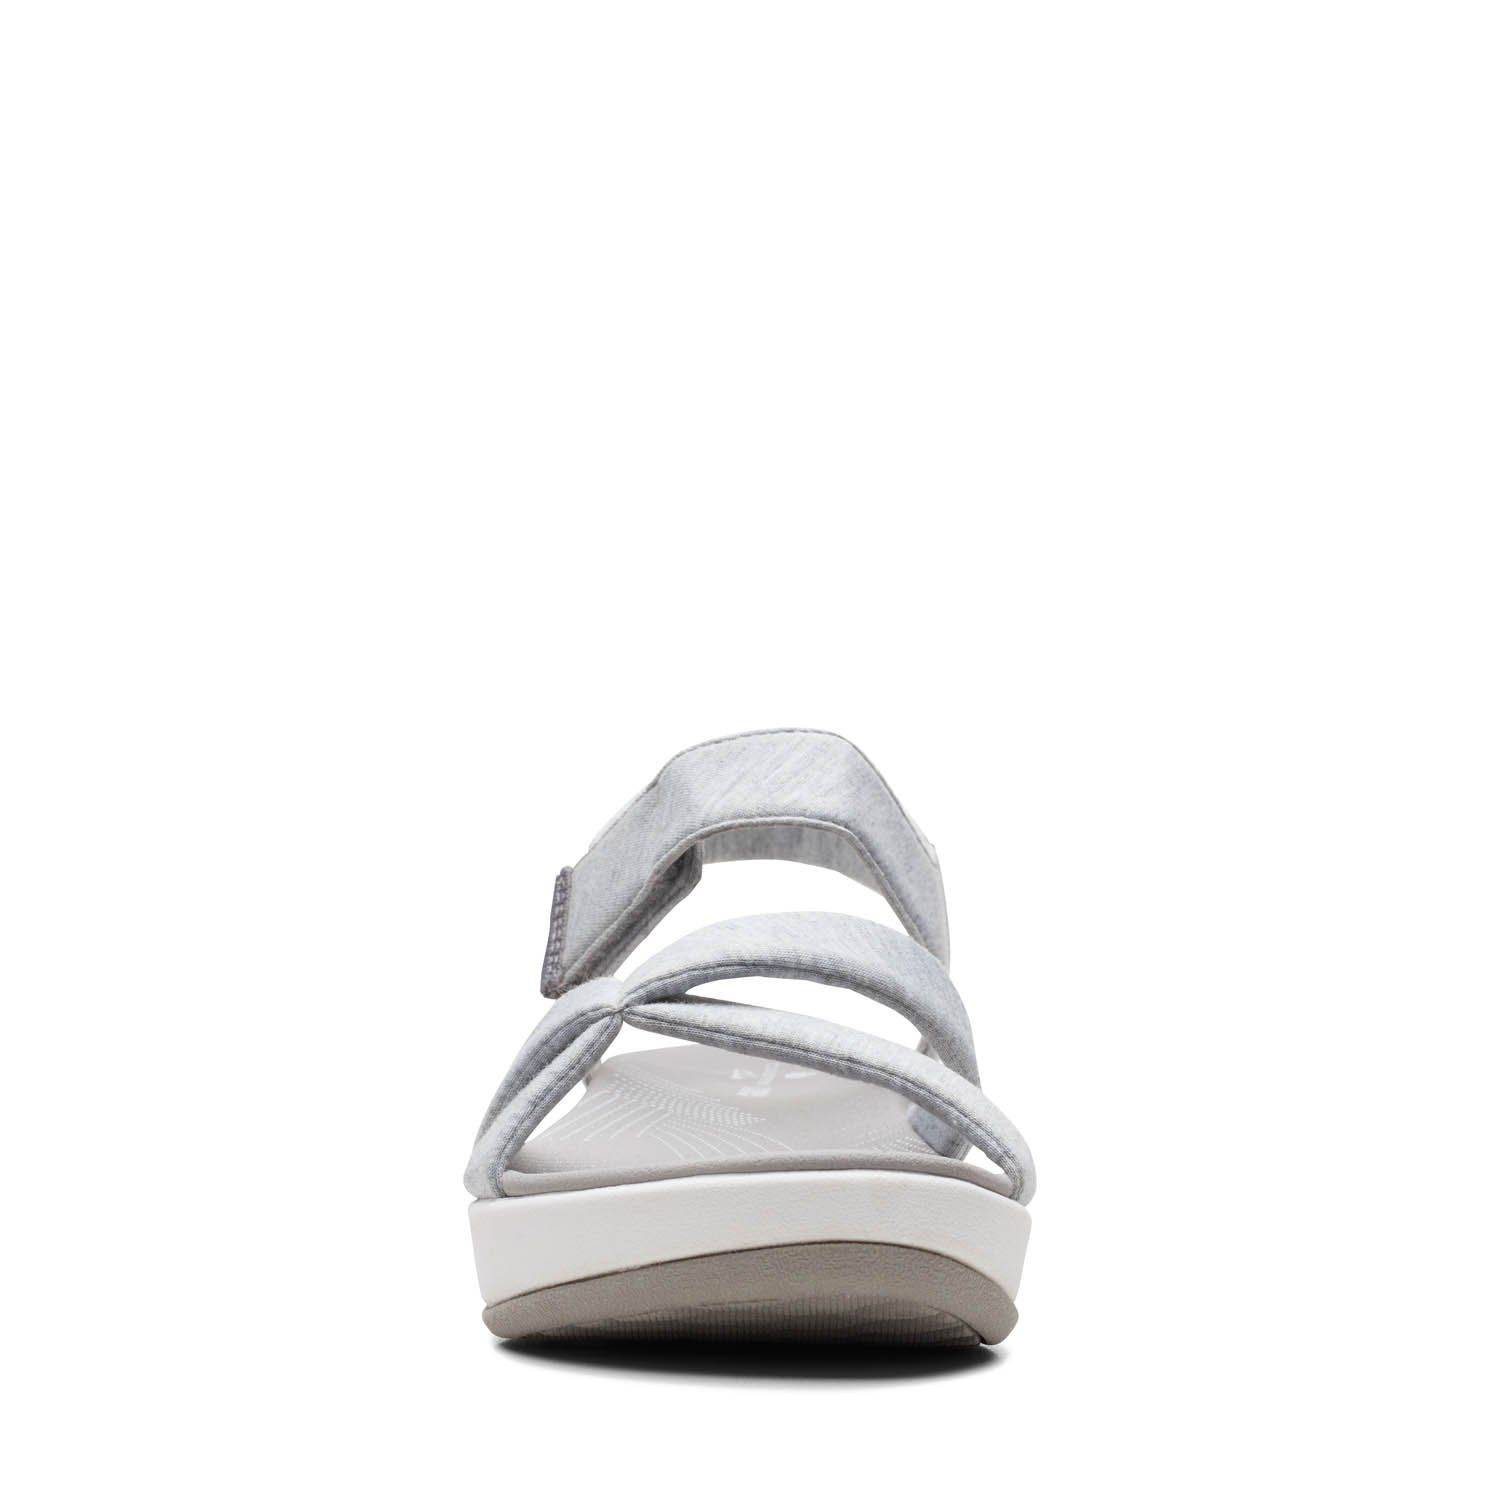 Женские сандалии Clarks (Arla Gracie 26159204), серые, цвет серый, размер 37 - фото 3